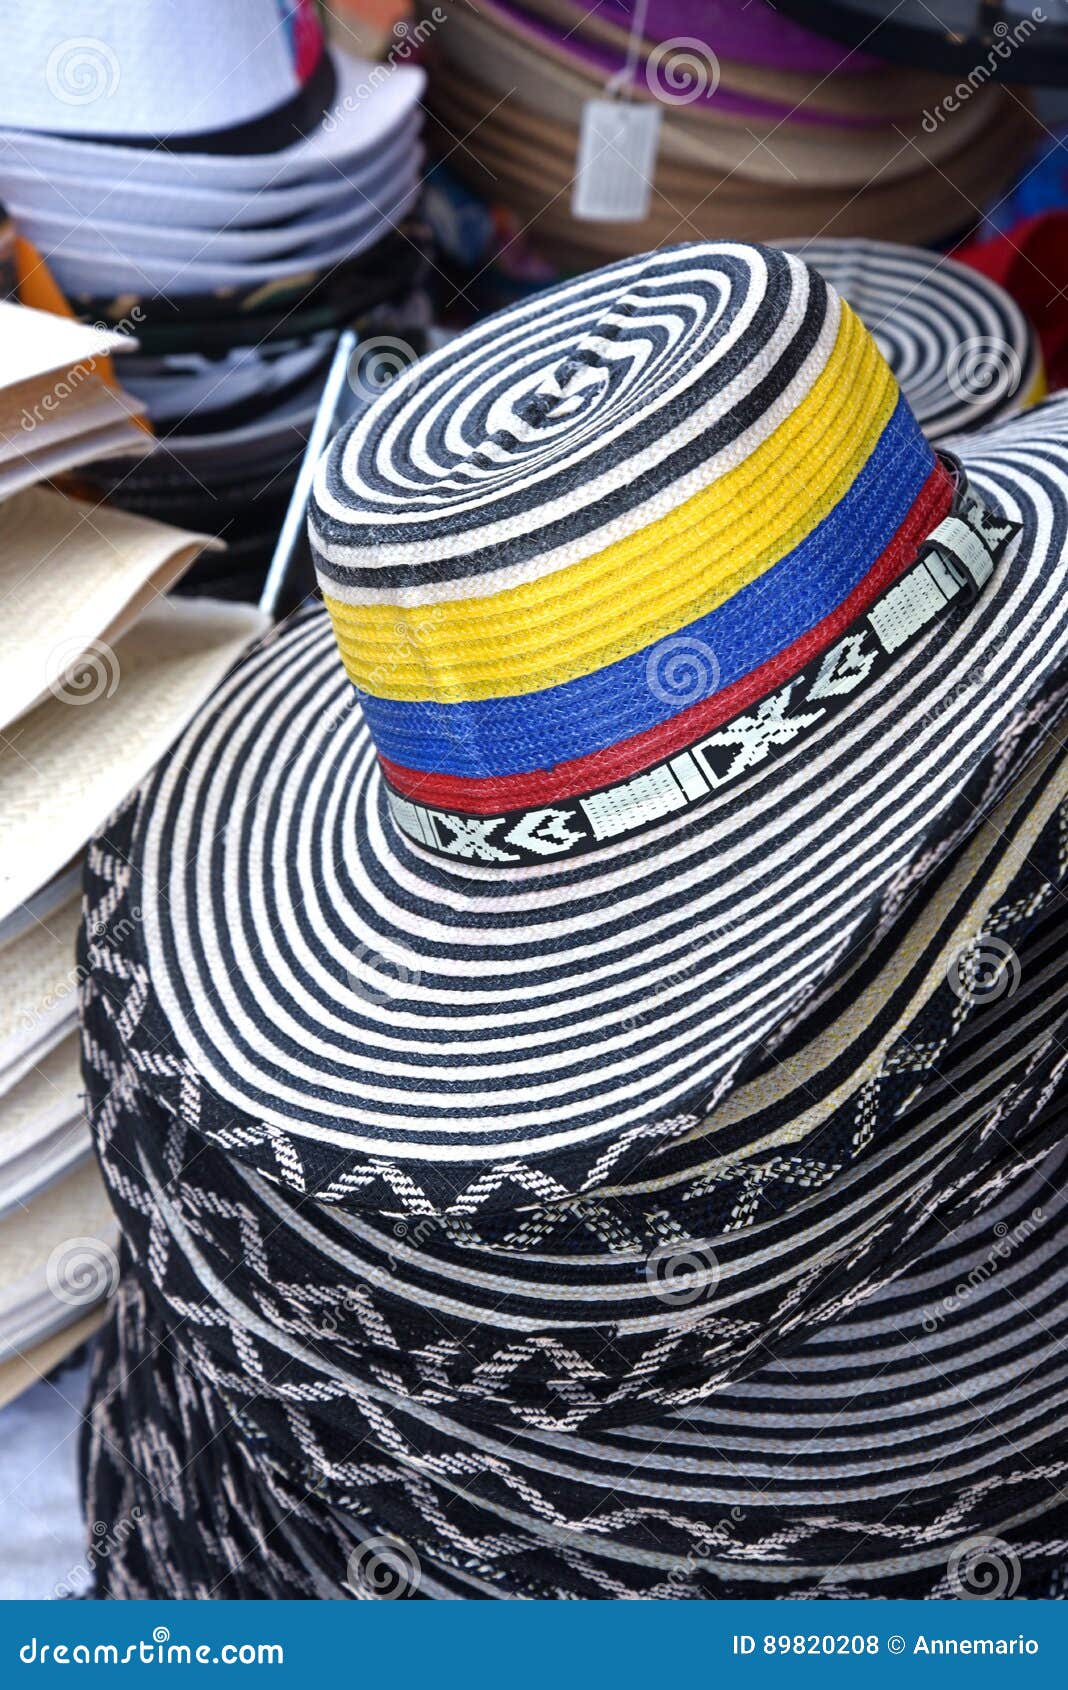 Sombrero colombiano foto de archivo. Imagen de visita - 89820208